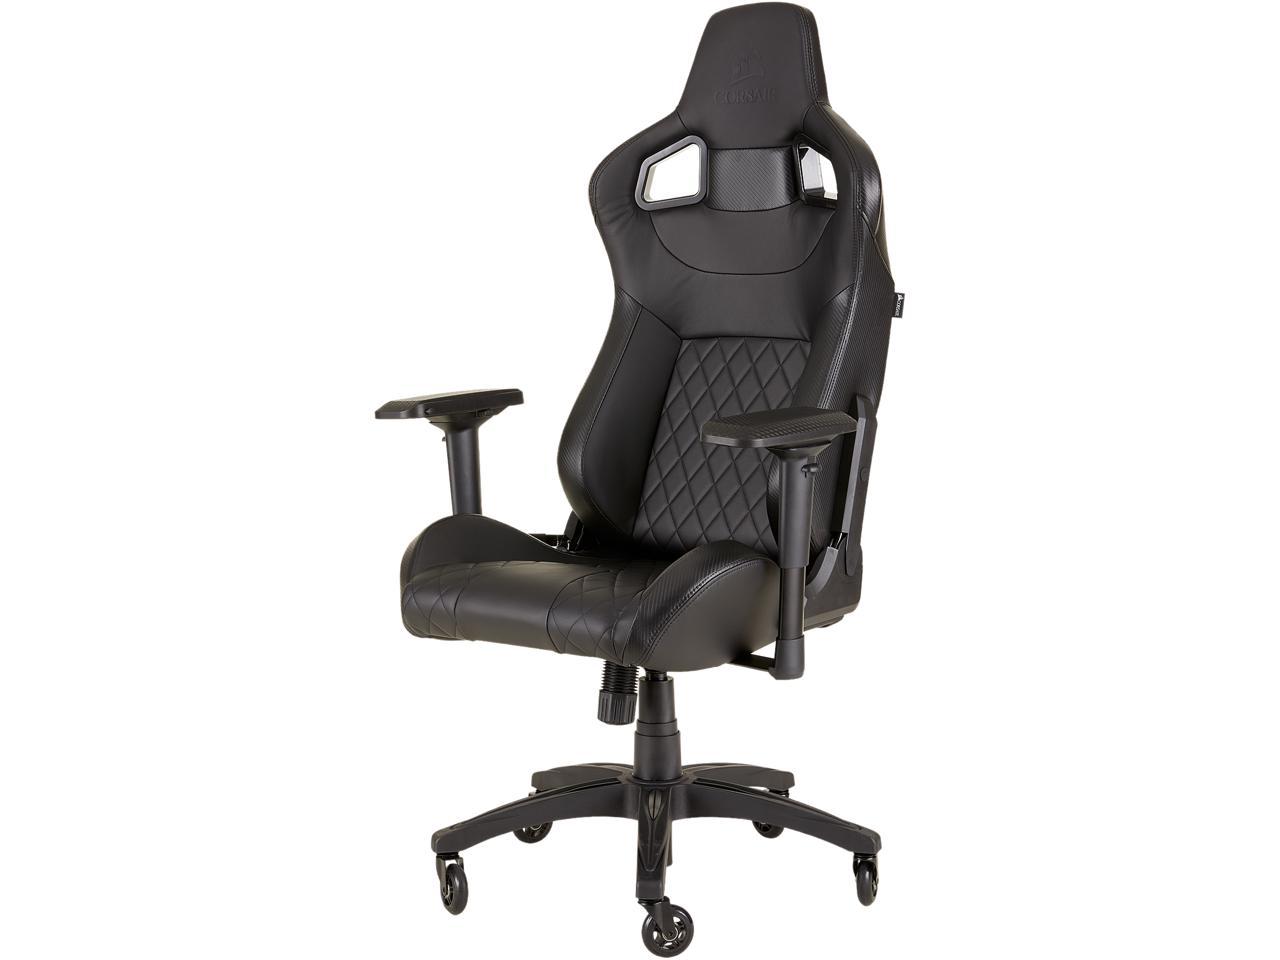 CORSAIR gaming chair T1, černá